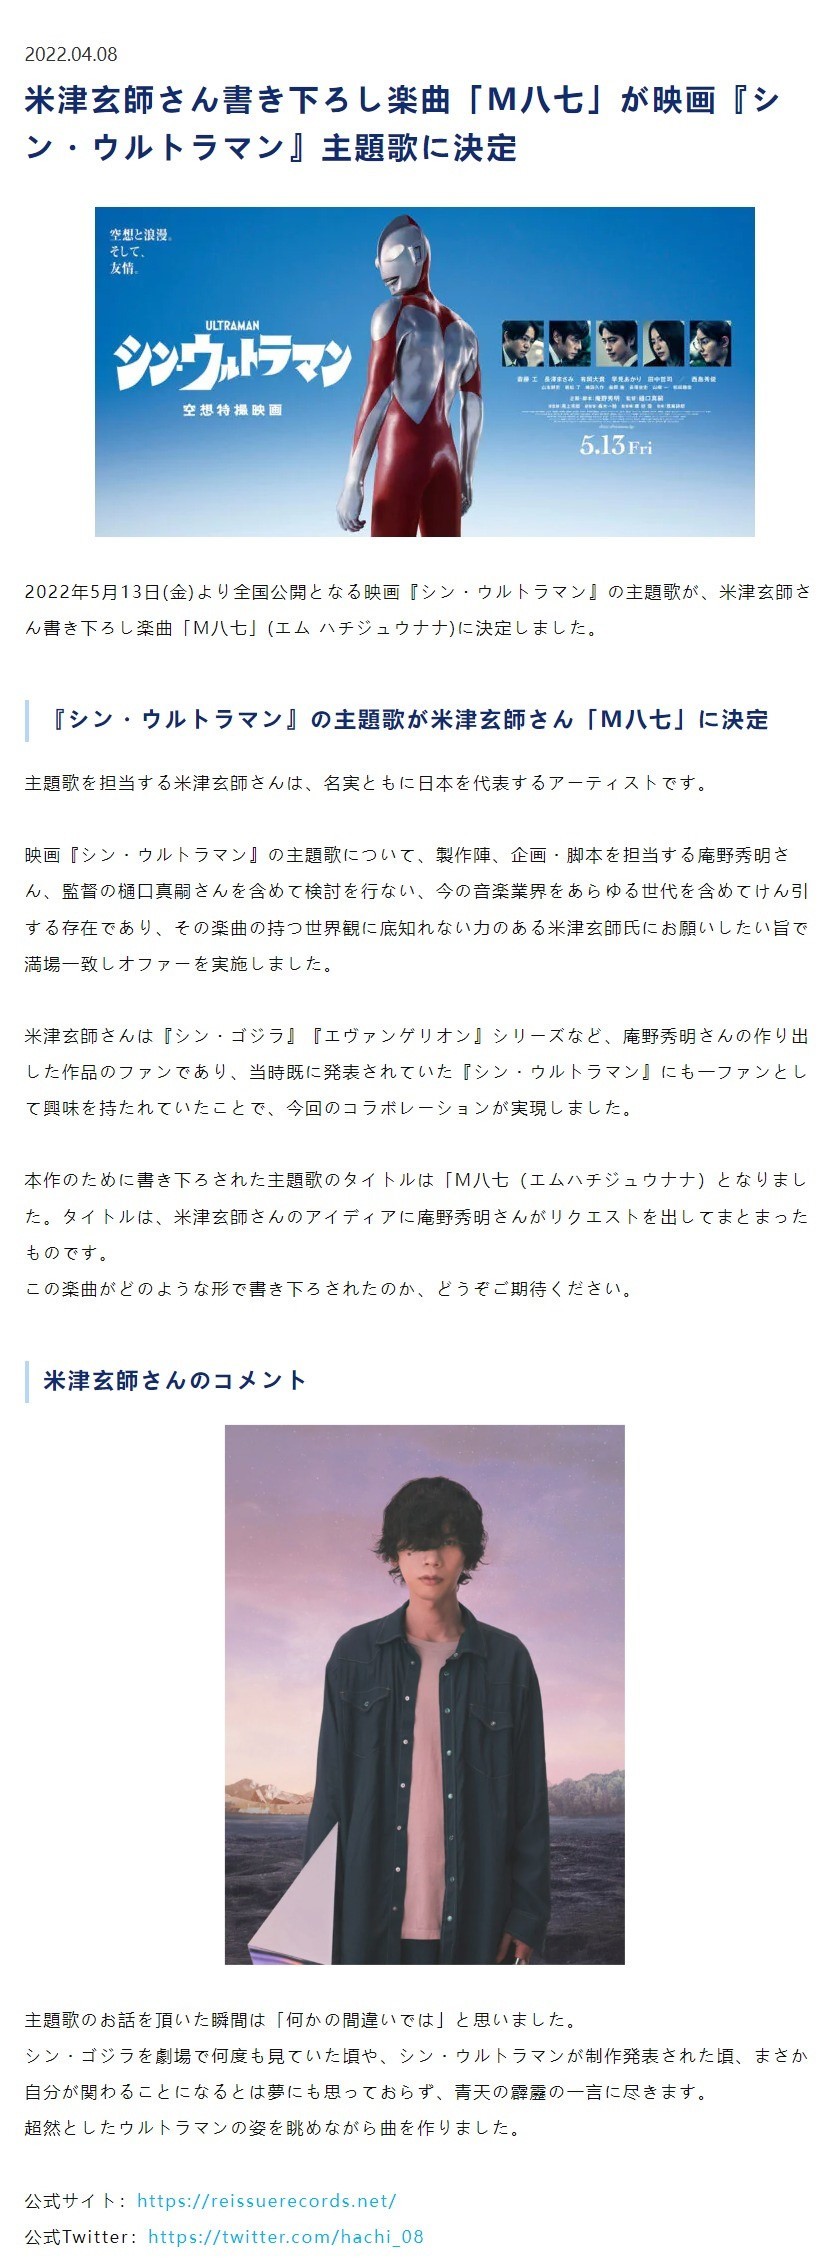 《新·奥特曼》5月13日上映 米津玄师献唱主题曲《M八七》